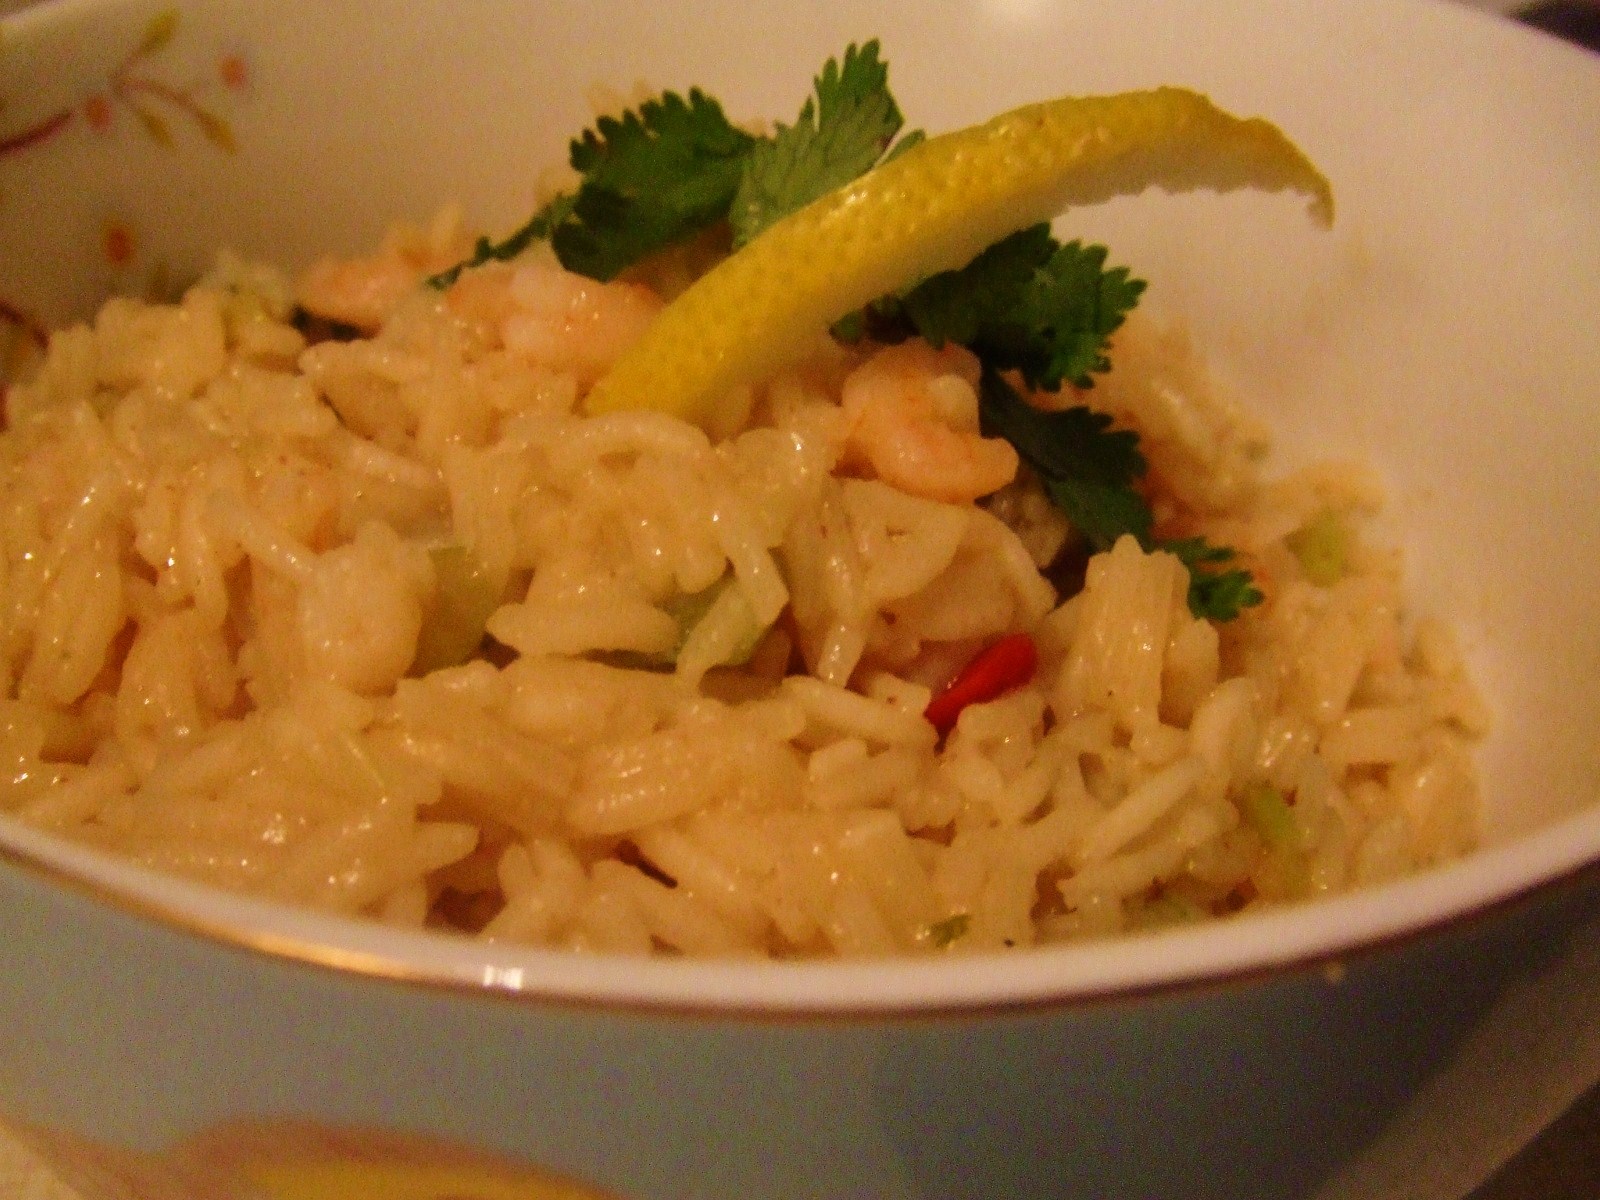 Linke Masche n.e.V.: Kokos-Krabben-Reis mit Zitrone und Koriander